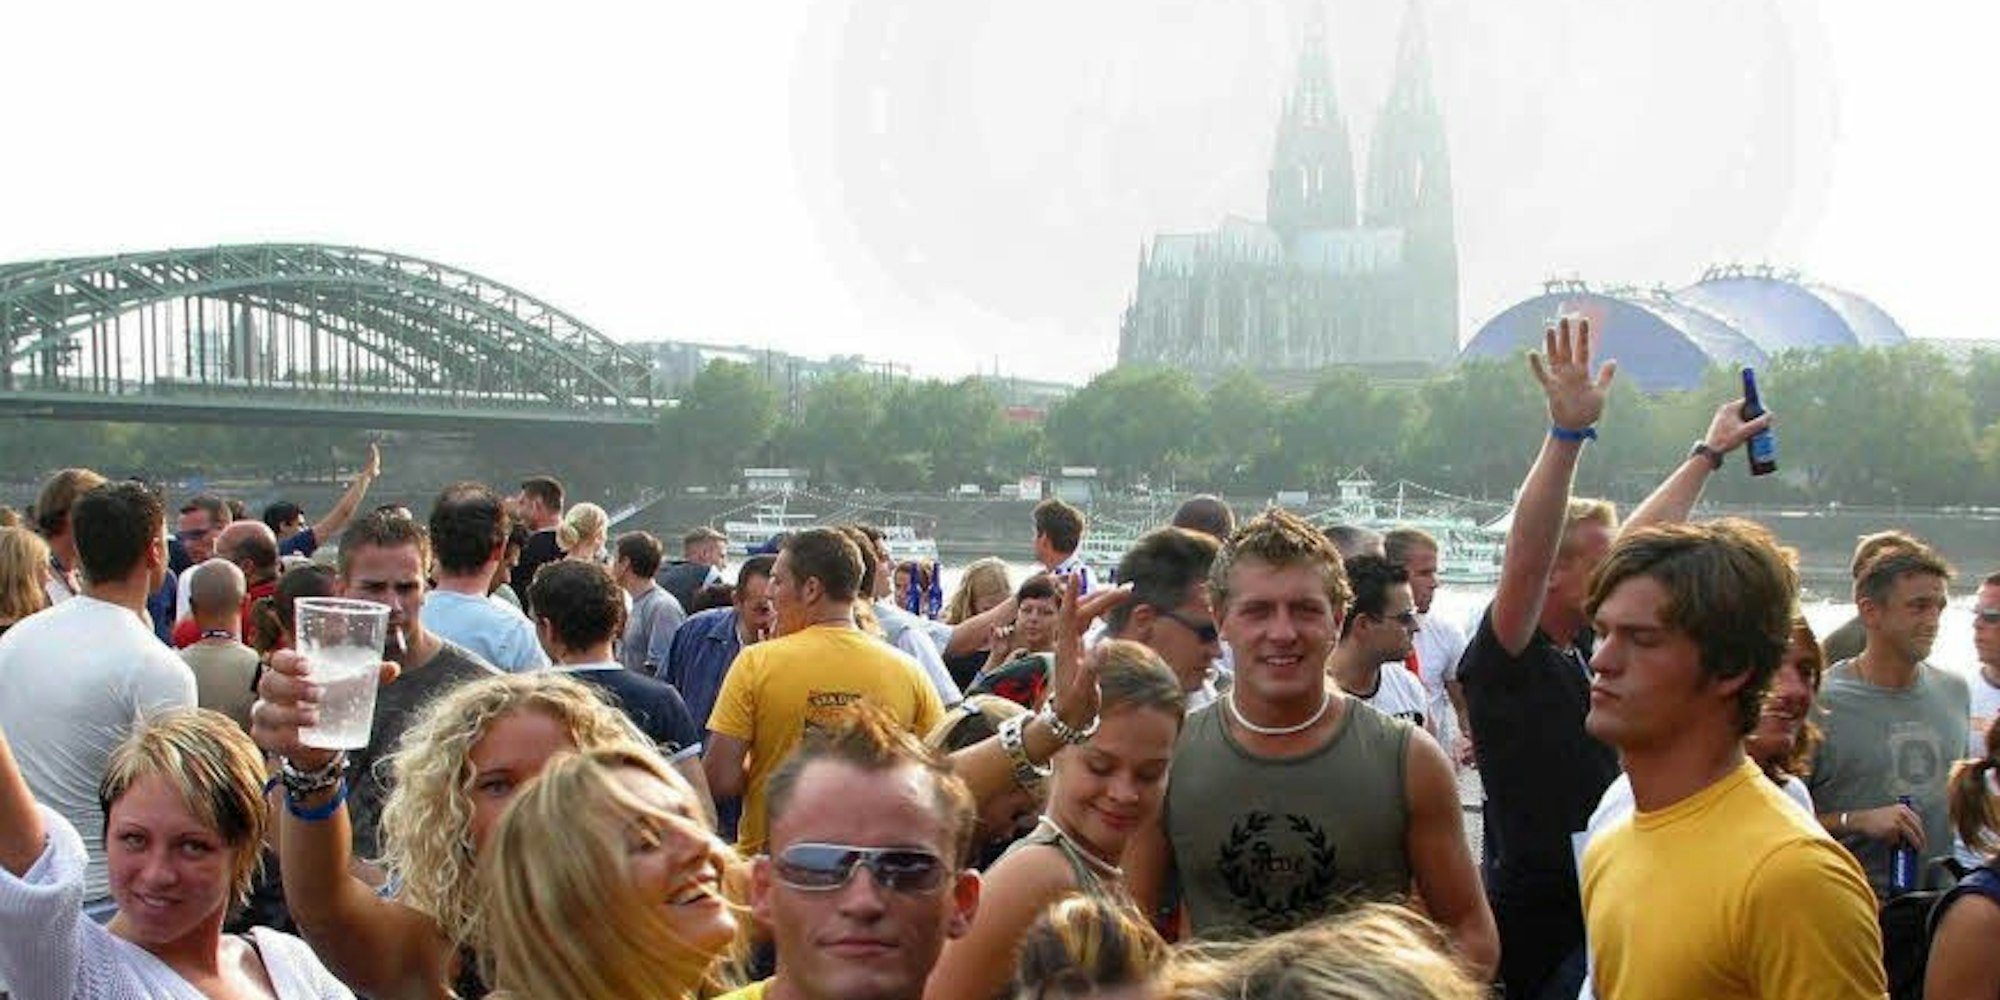 Ausgelassen feiern darf man auch  künftig auf Partyschiffen in Köln. Die Betreiber müssen aber bestimmte Auflagen erfüllen. (Foto: dpa)